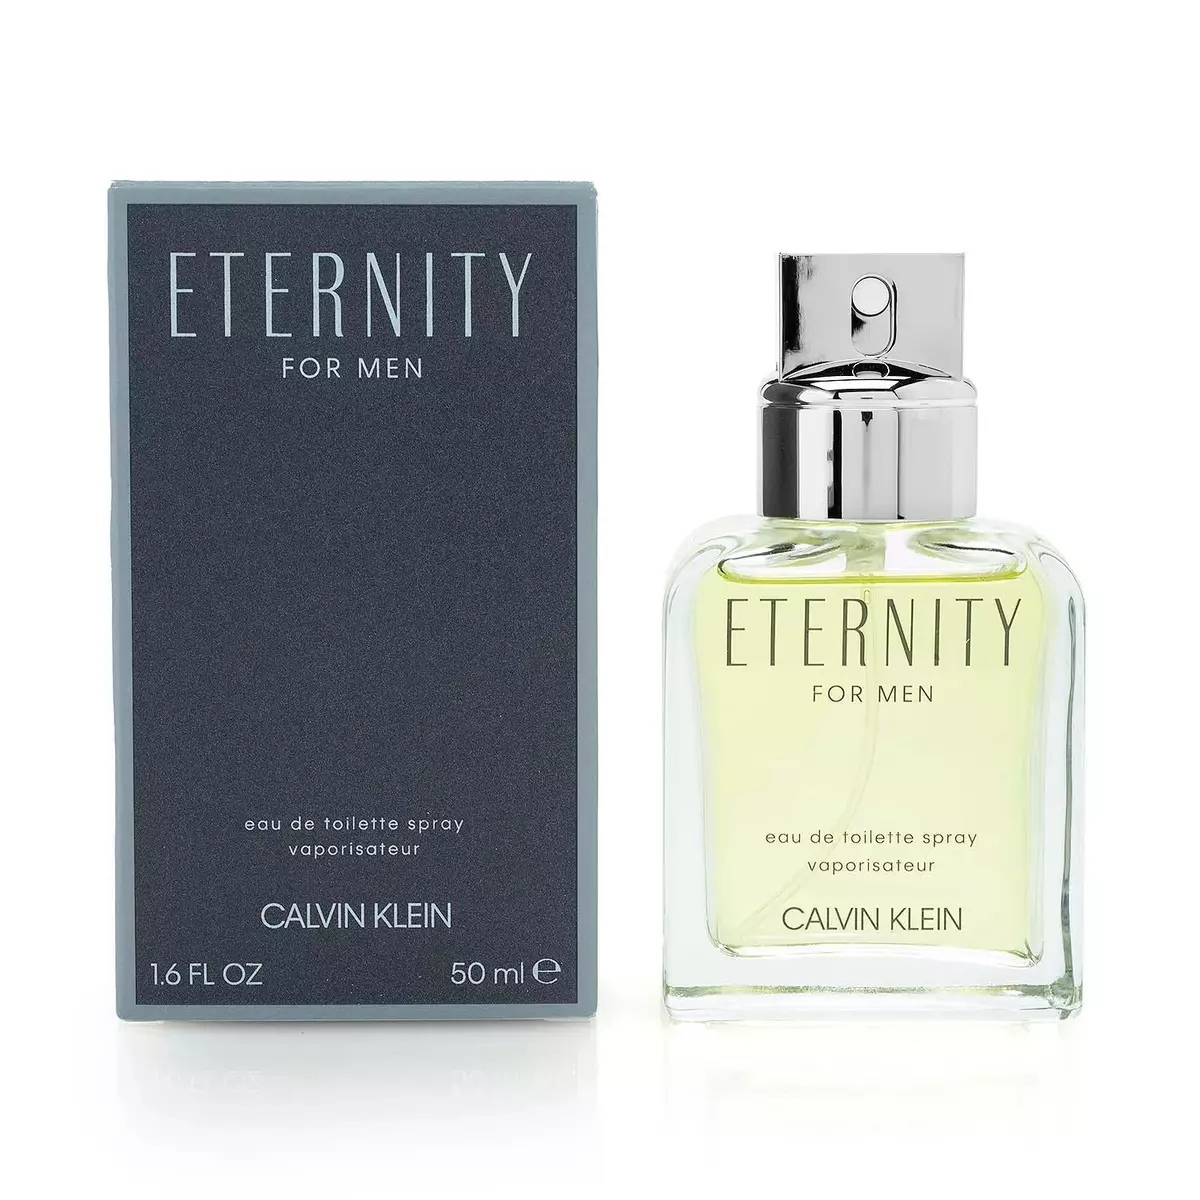 Туалетная вода мужская Calvin Klein Eternity For Men edt 50 мл eternity aqua туалетная вода 200мл уценка